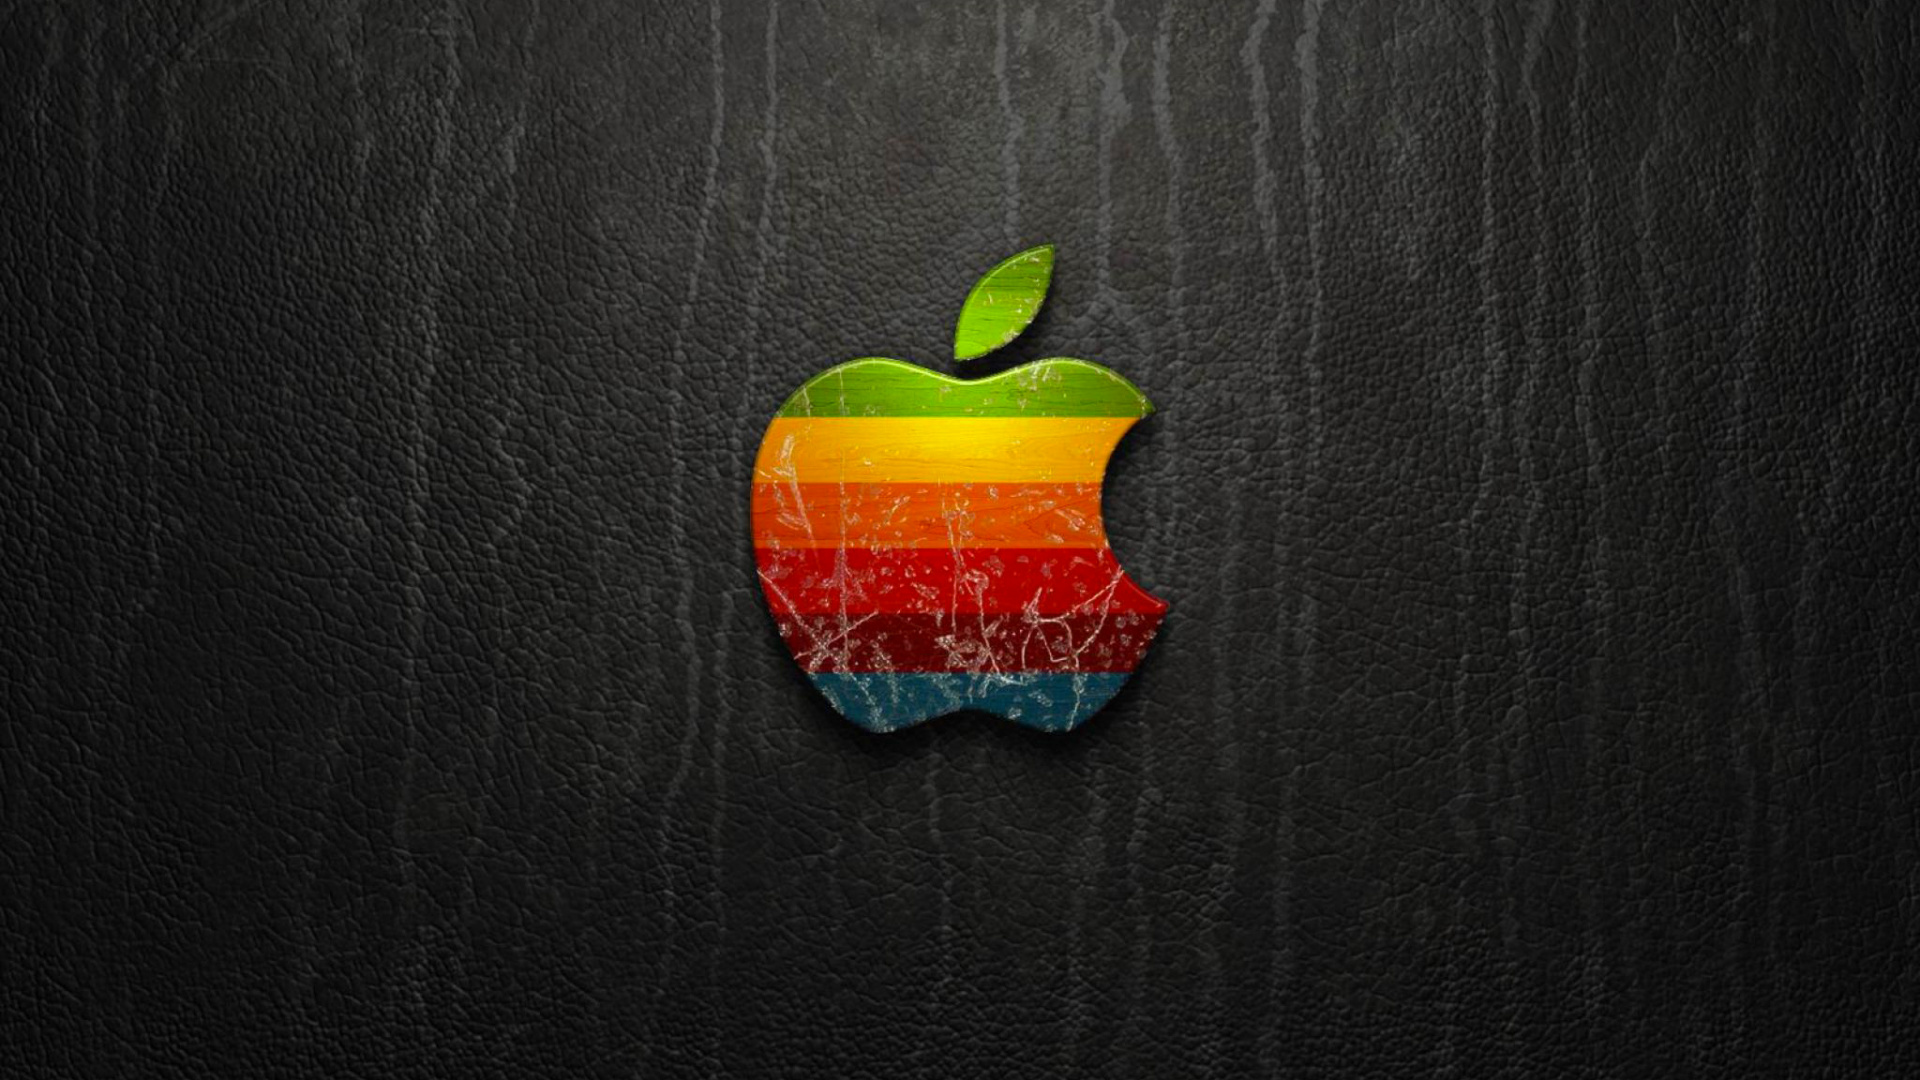 Обои 1920x1080 apple, iMac, черный, фрукты, лого, Full HD, HDTV, 1080p 16:9...